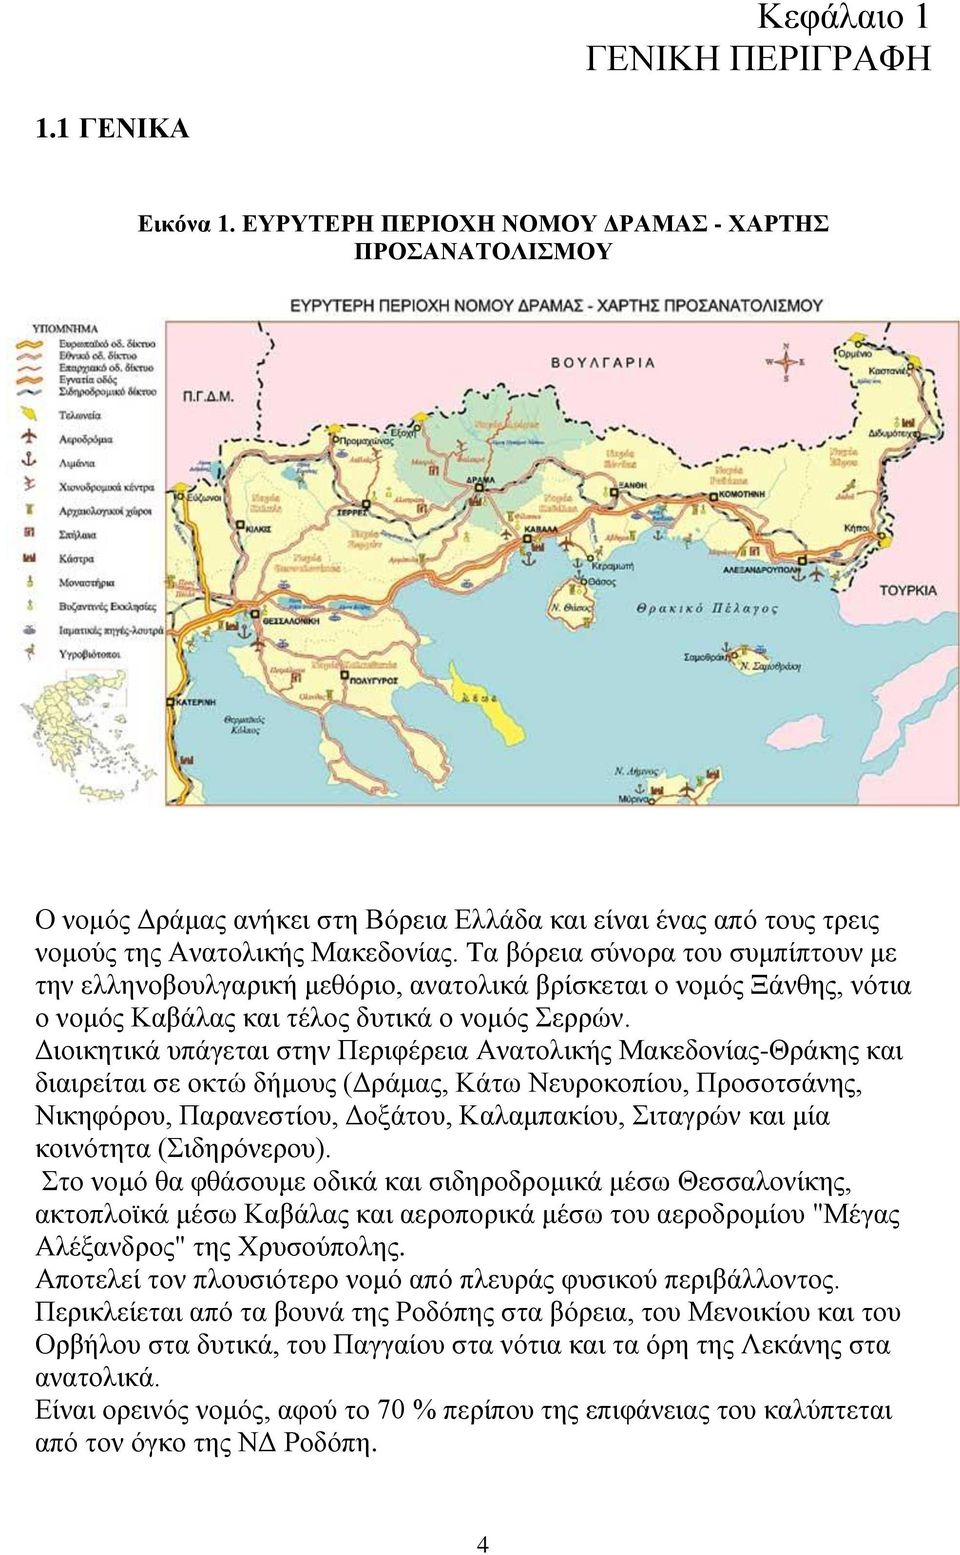 Tα βόρεια σύνορα του συμπίπτουν με την ελληνοβουλγαρική μεθόριο, ανατολικά βρίσκεται ο νομός Ξάνθης, νότια ο νομός Καβάλας και τέλος δυτικά ο νομός Σερρών.